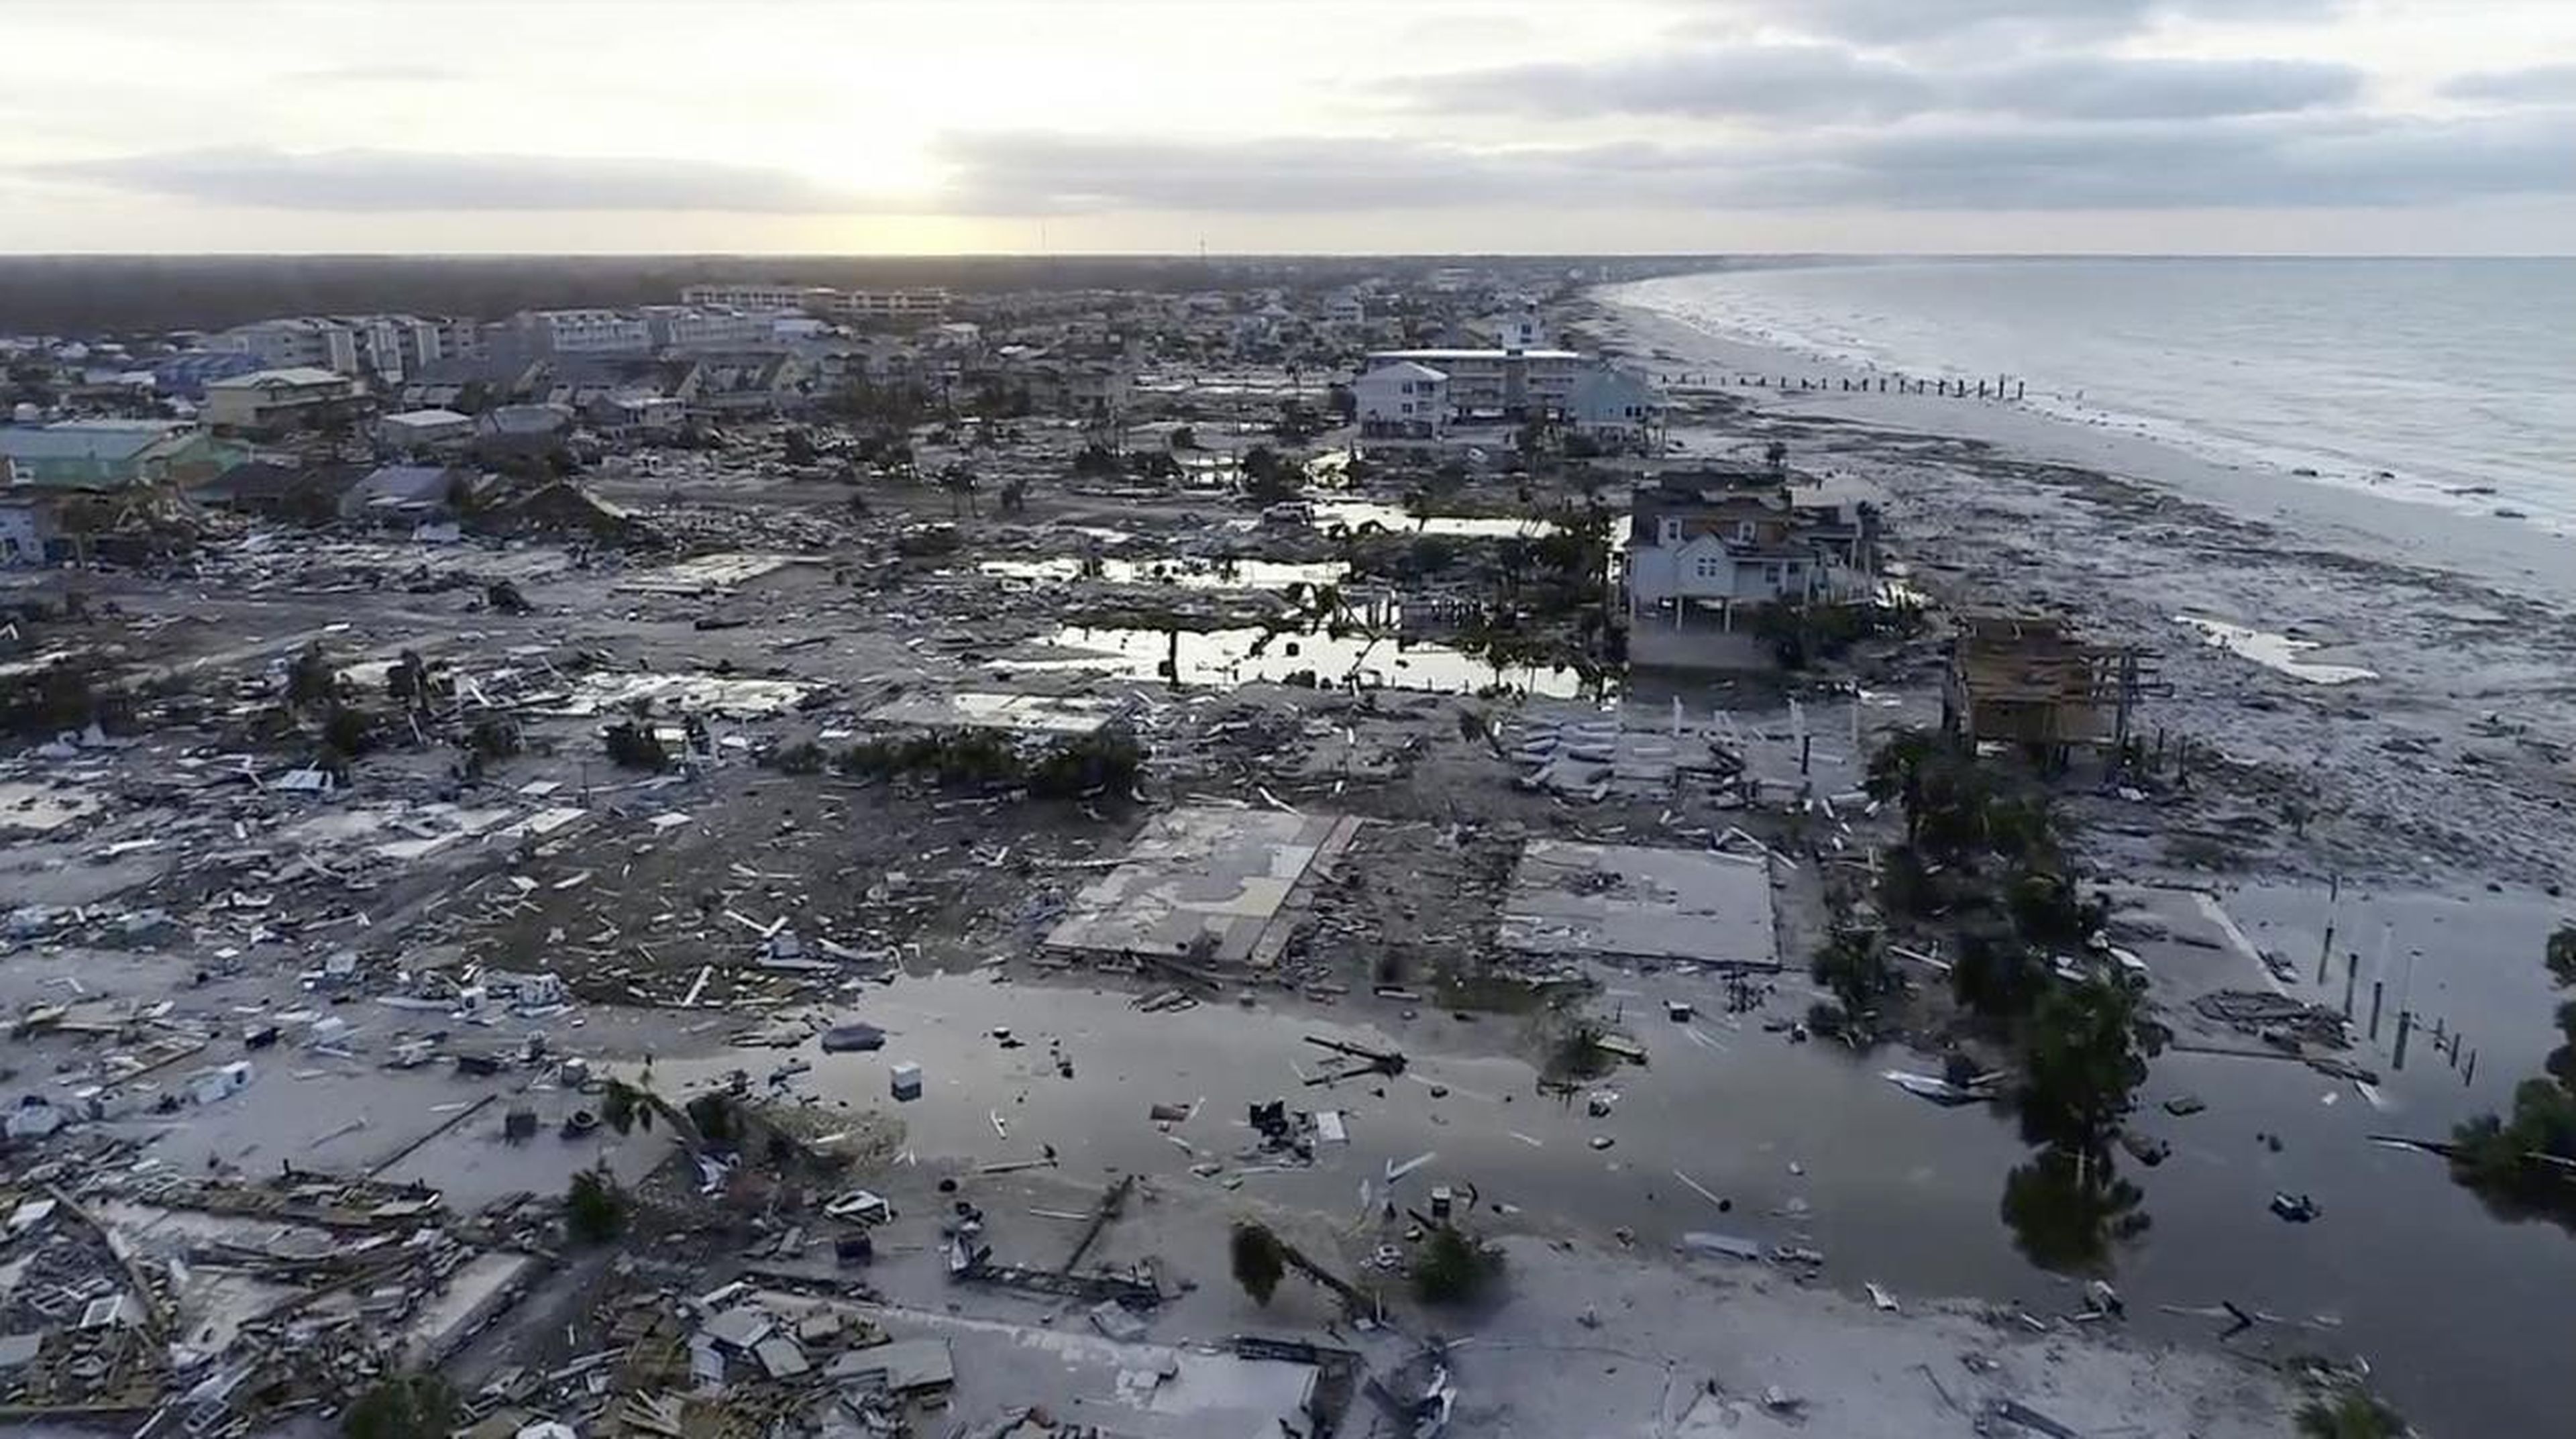 Daños del huracán Michael en México Beach, Florida, en octubre de 2018.